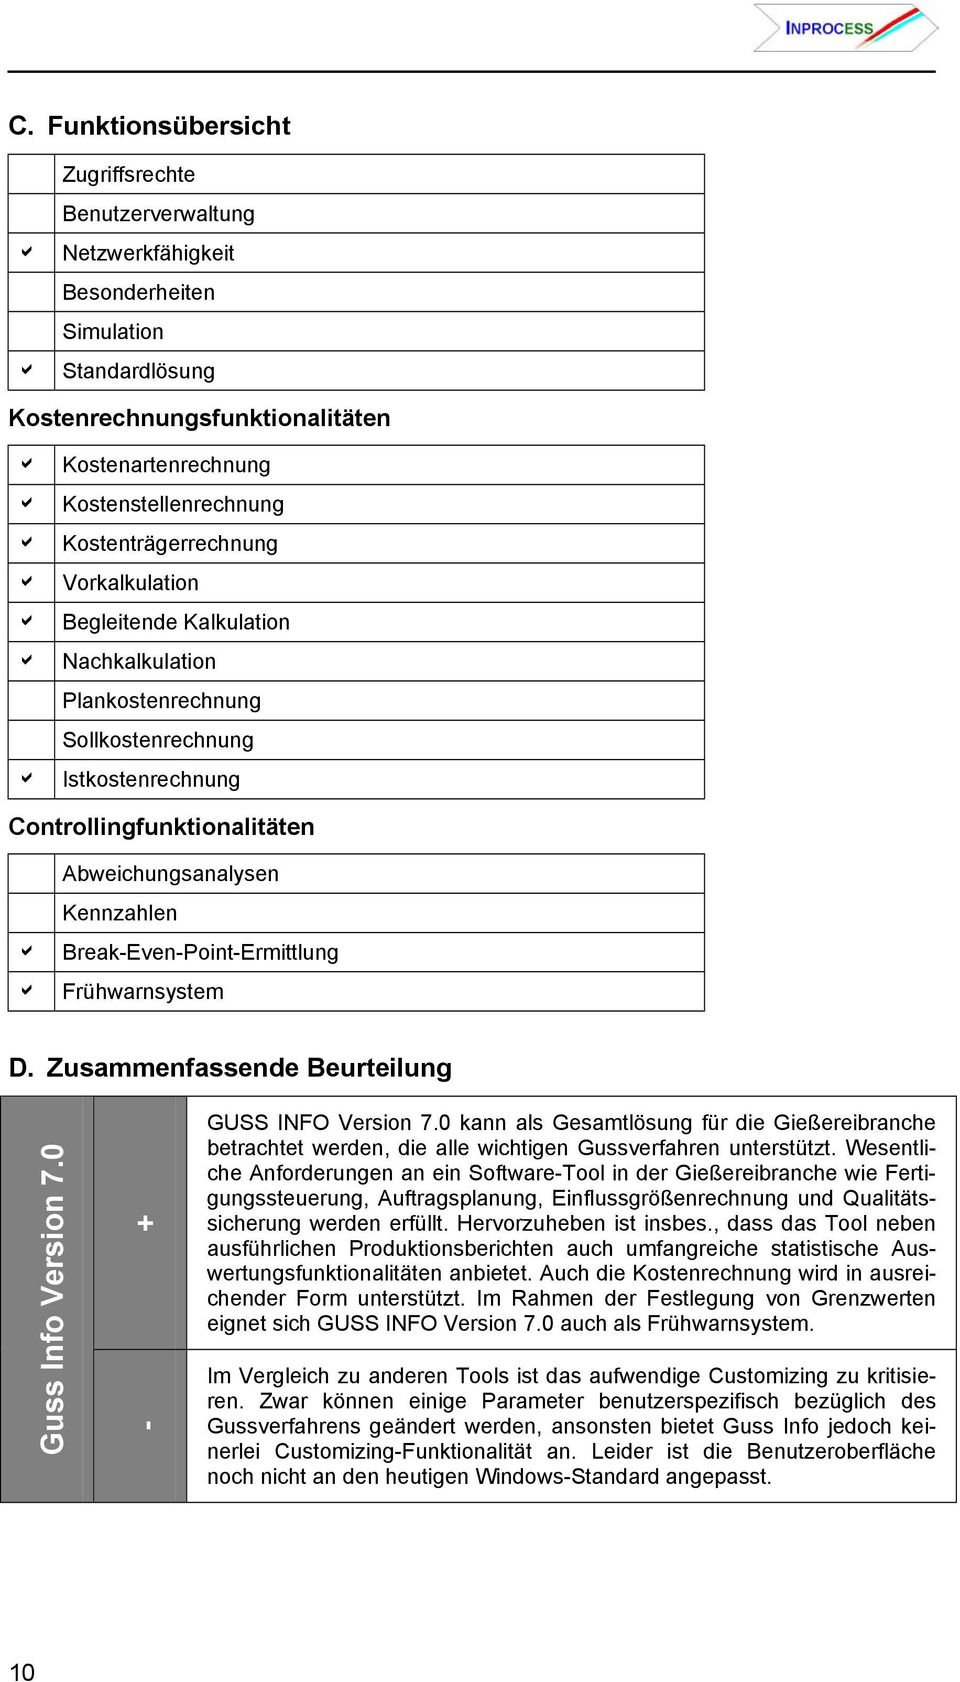 Brek-Even-Point-Ermittlung Frühwrnsystem D. Zusmmenfssende Beurteilung Guss Info Version 7.0 + - GUSS INFO Version 7.